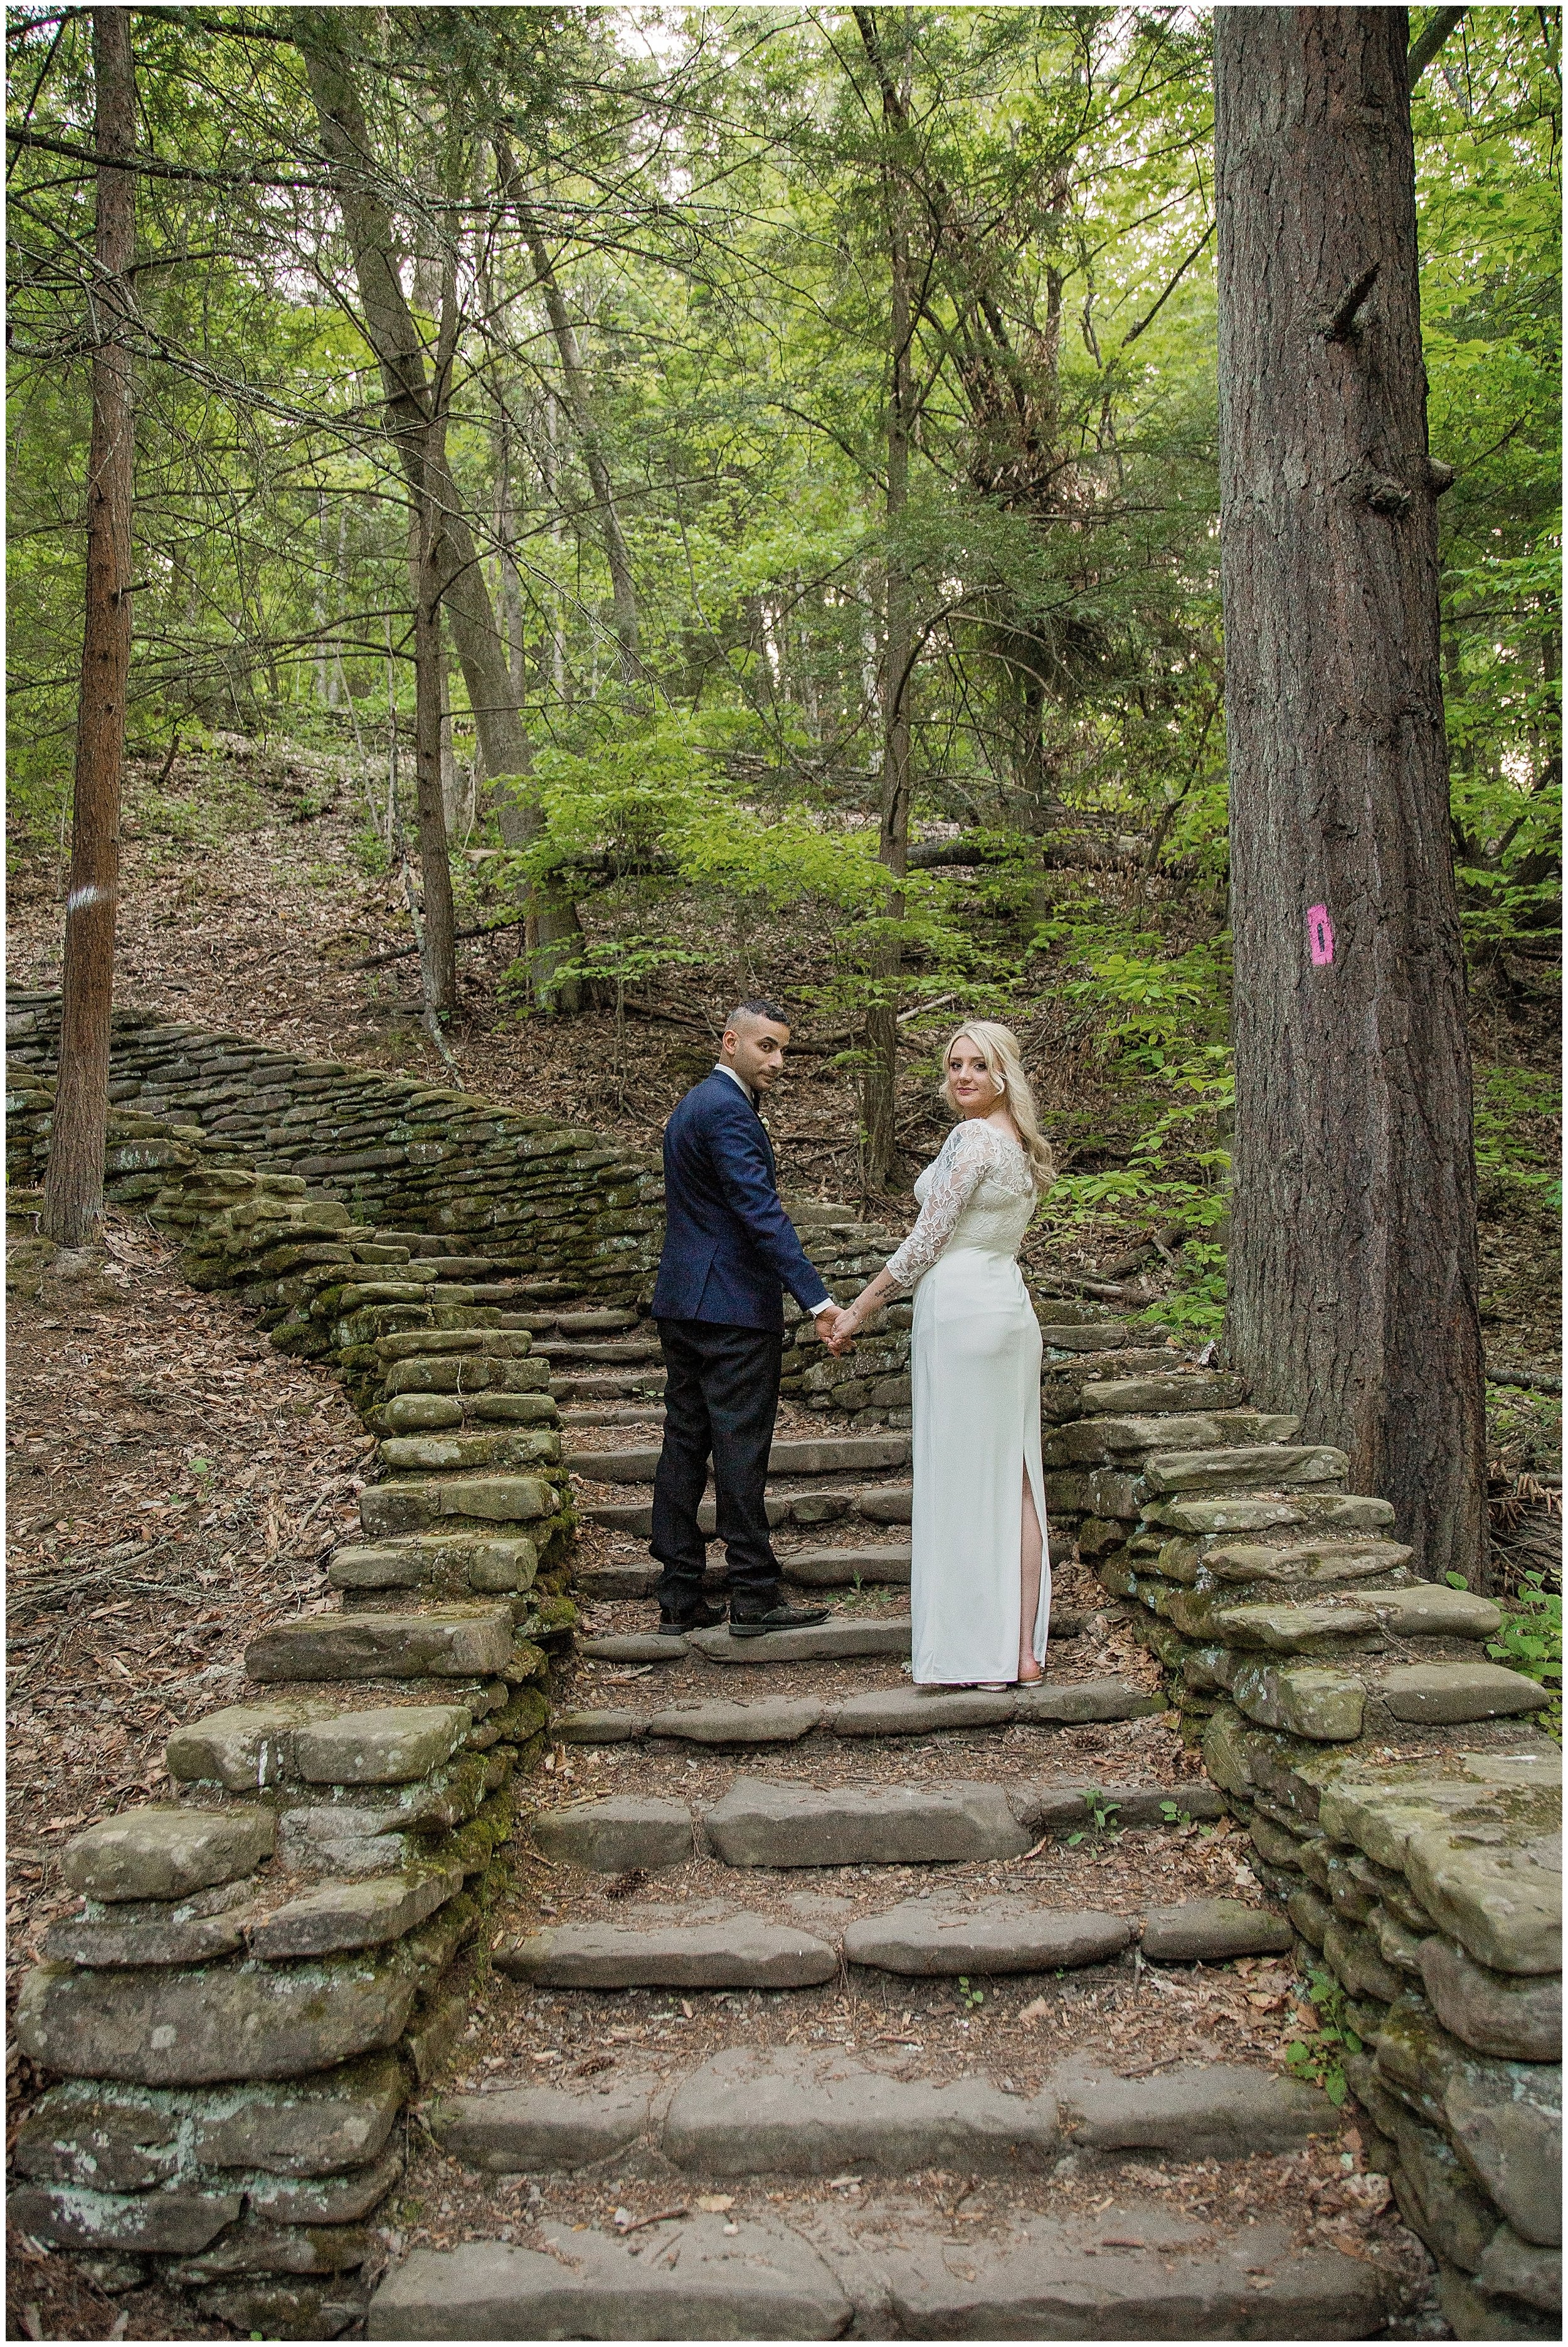 Letchworth State Park Wedding - Elopement-630.jpg